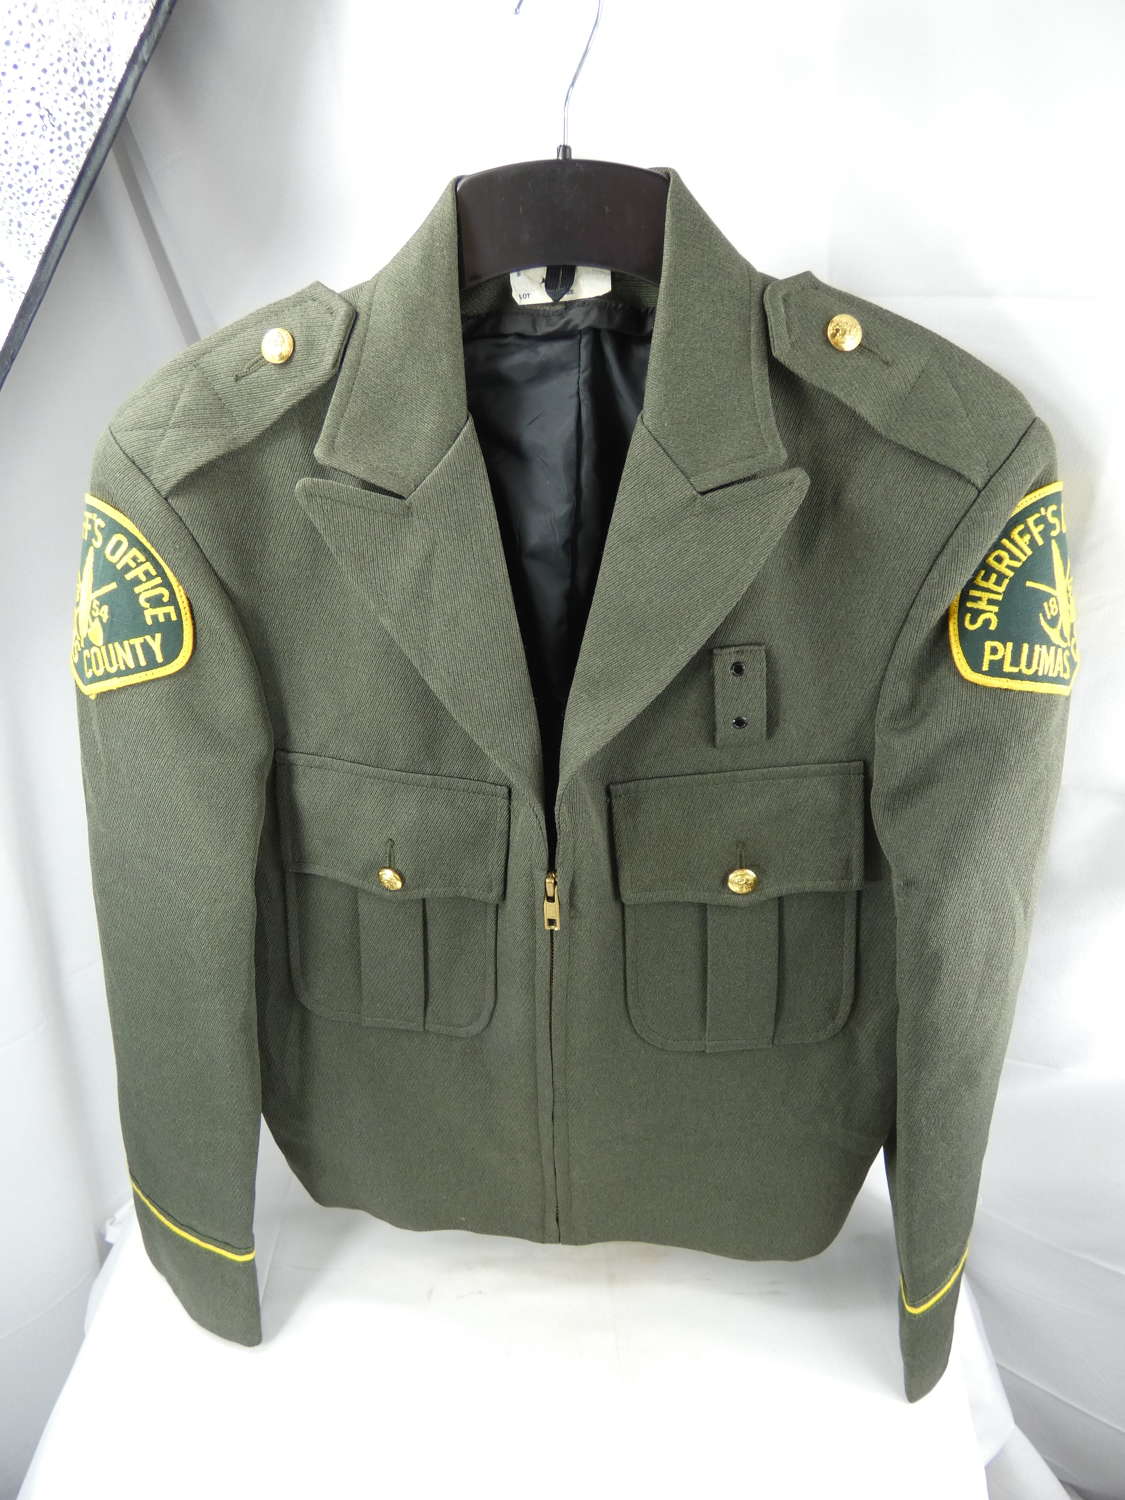 U.S. Sheriffs Police Uniform Jacket